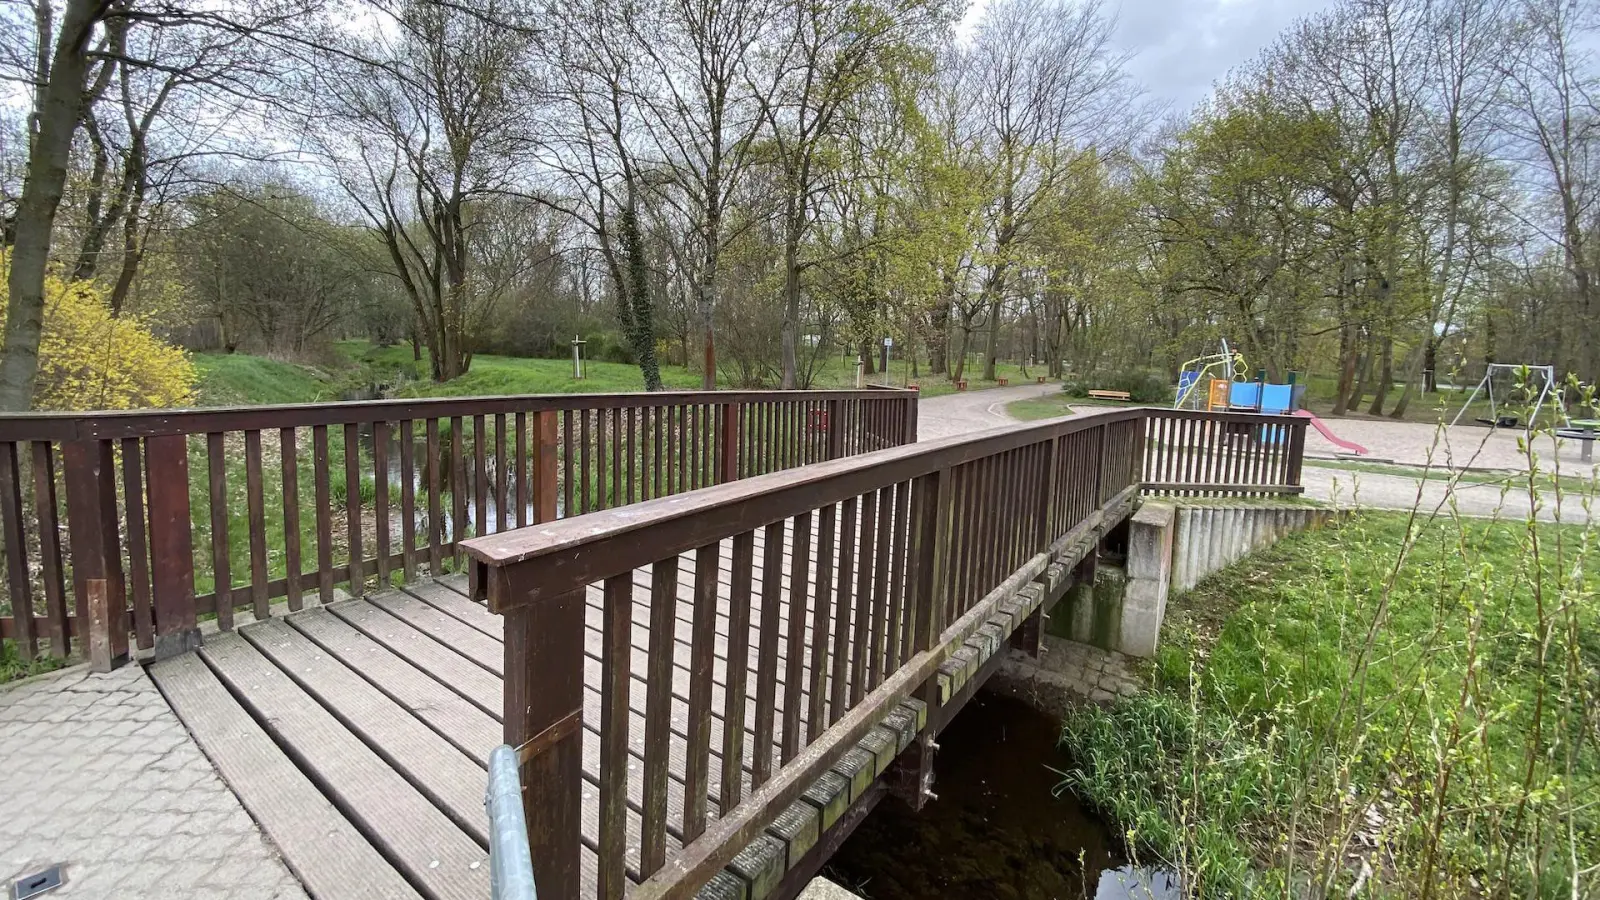 Die Brücke, die zum Spielplatz im Park führt, muss nächste Woche kurzzeitig gesperrt werden. (Foto: taucha-kompakt.de)